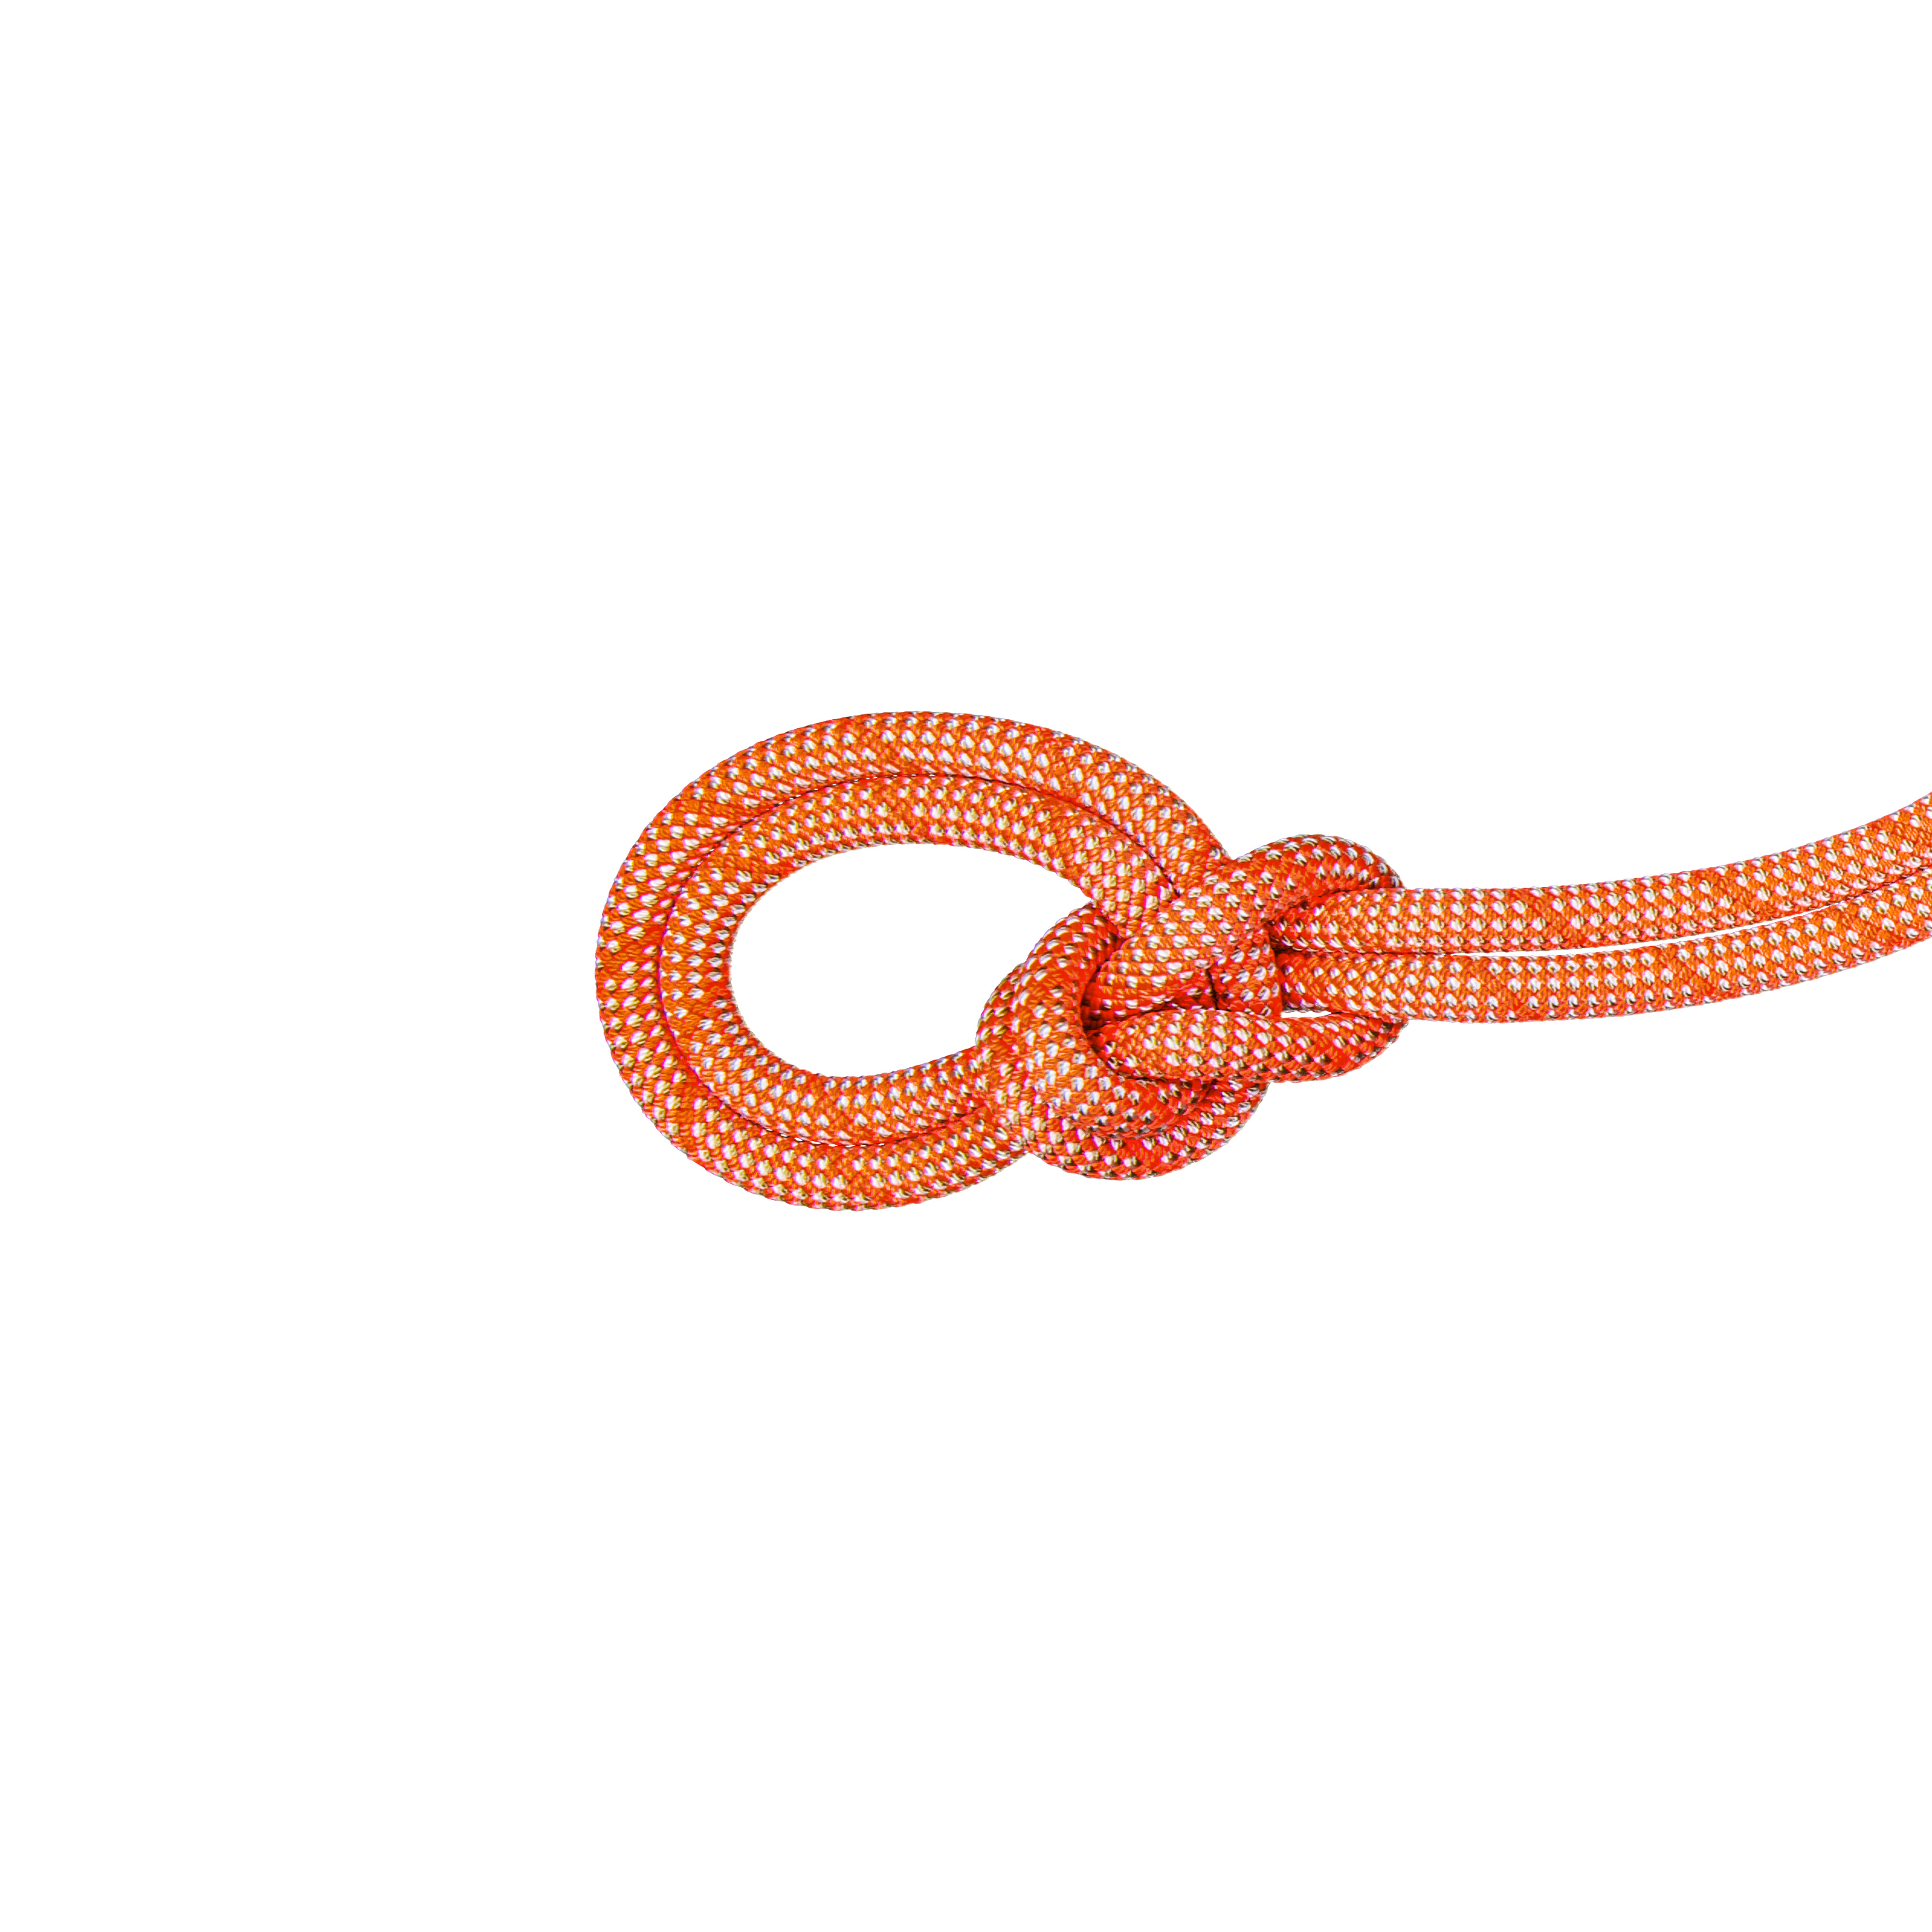 9.8 Crag Classic Rope Classic Standard, orange-white